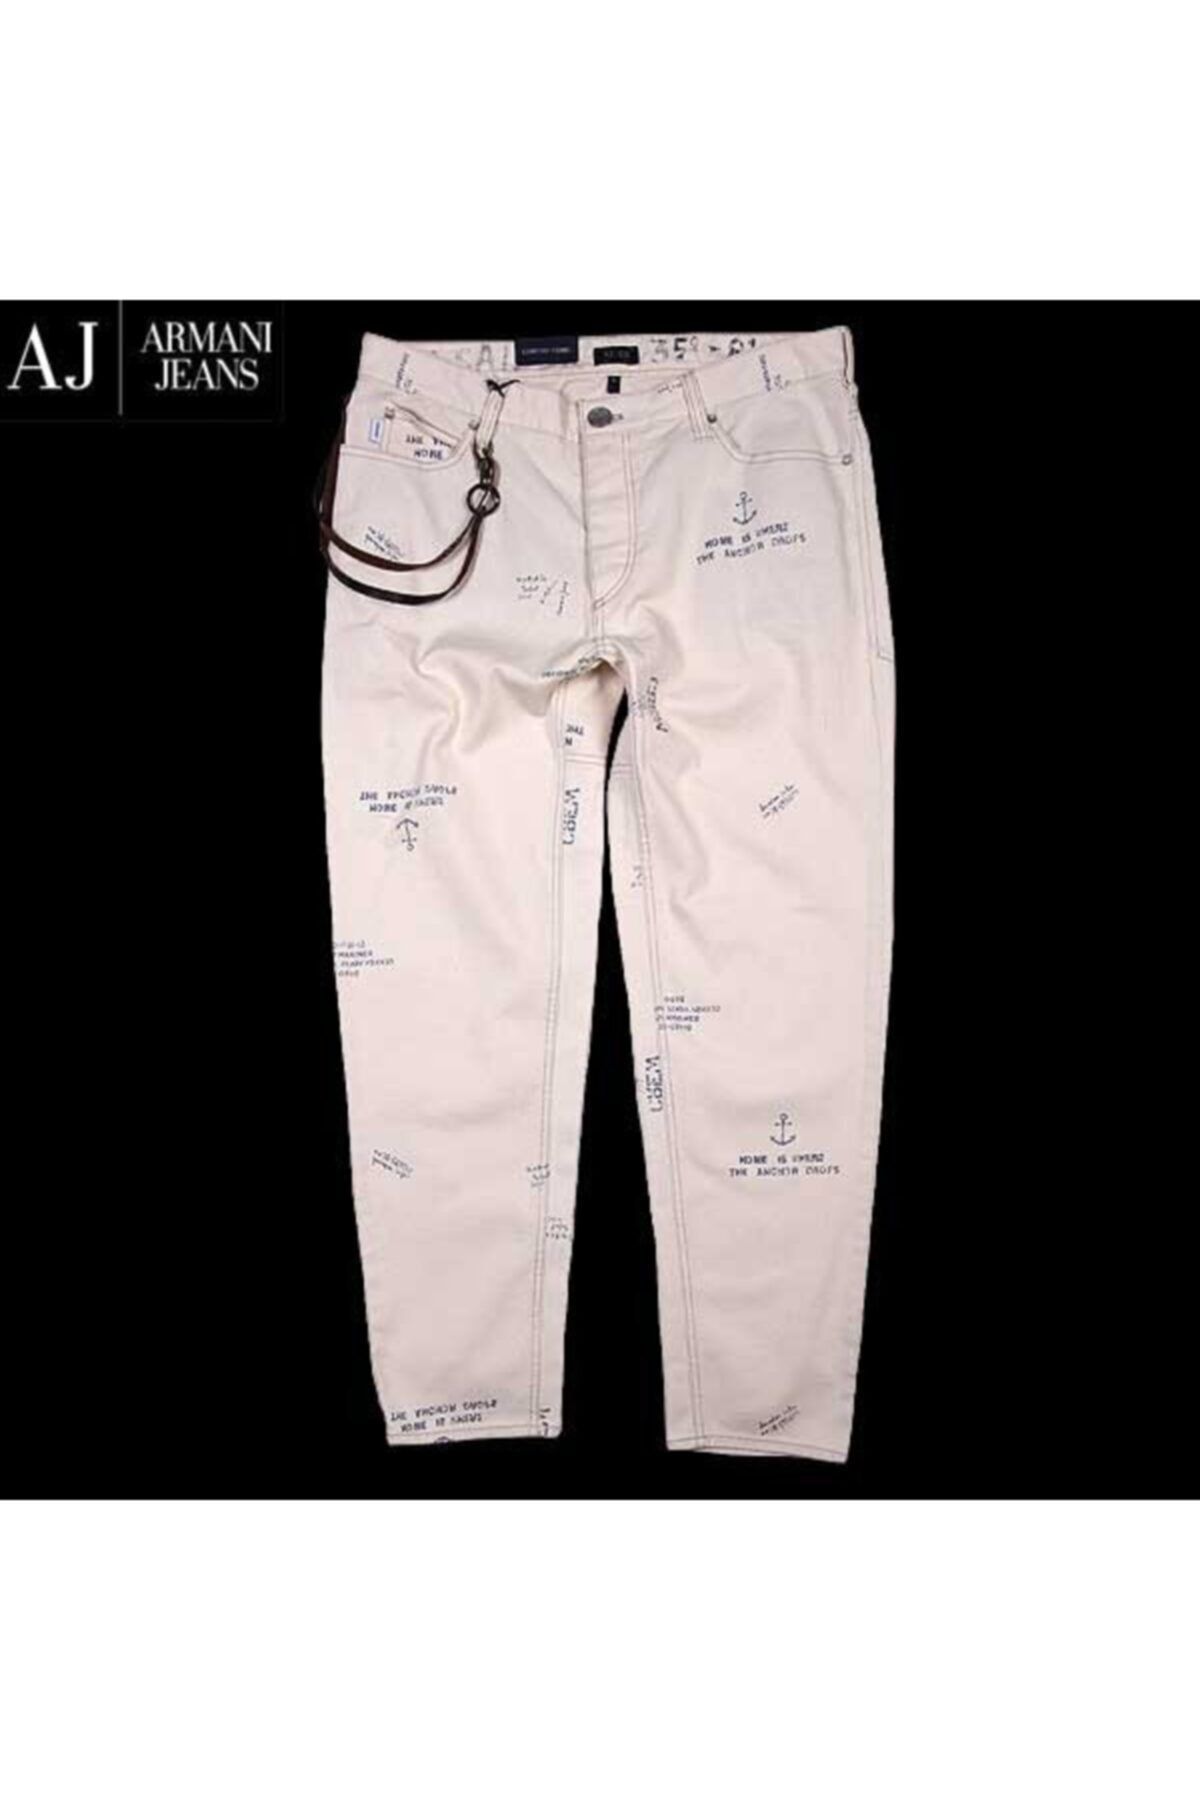 Armani Jeans Armanı Jeans Erkek Beyaz Baskılı Jeans Pantolon